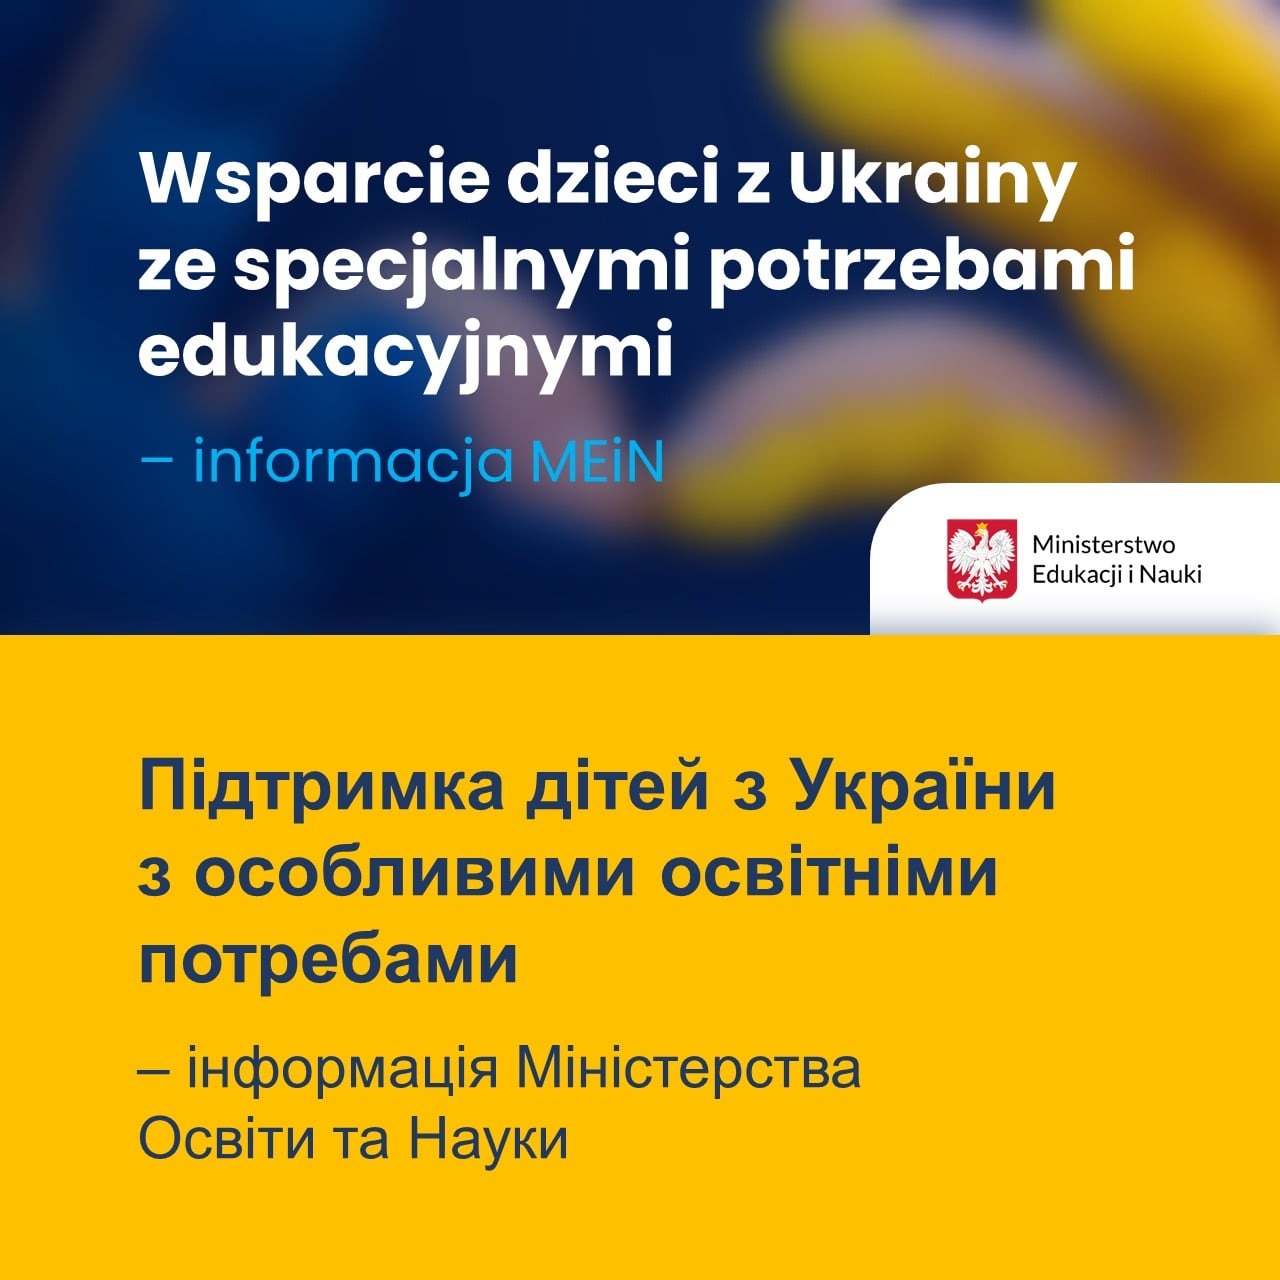 Wsparcie dzieci z Ukrainy ze specjalnymi potrzebami edukacyjnymi – informacja MEiN - Obrazek 1